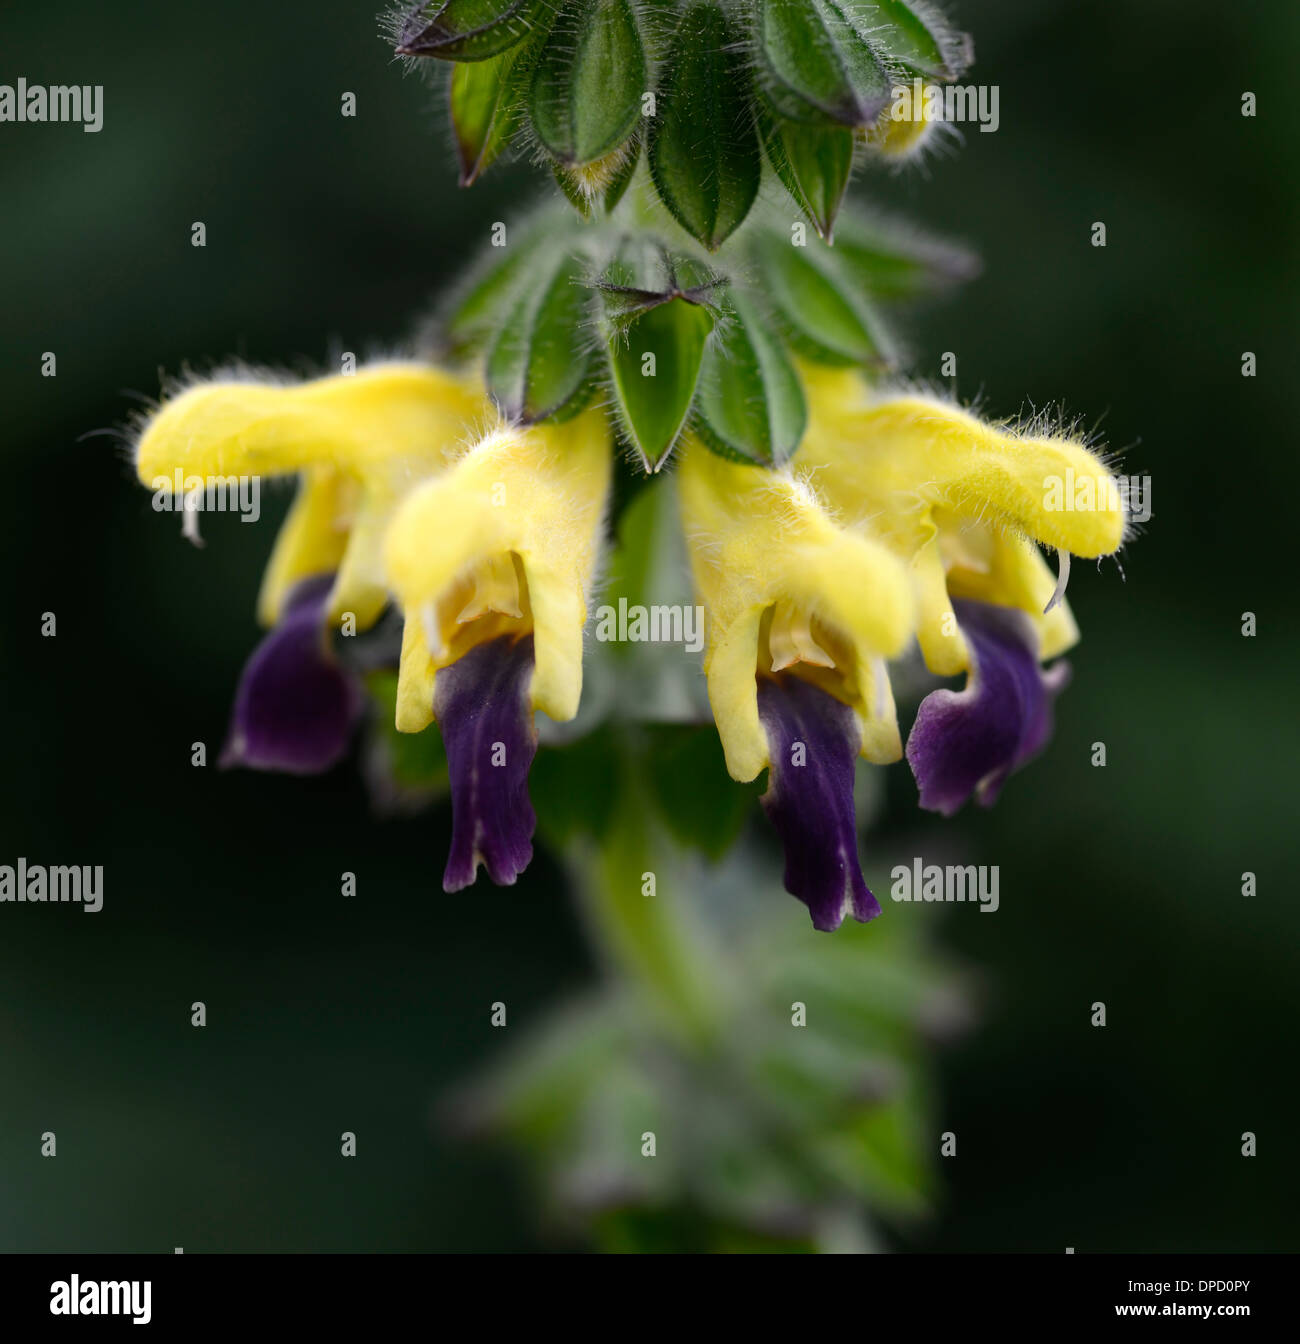 Les lèvres bleues bulleyana salvia sage sages jaune violet fleurs plante à fleurs portraits bicolor bicolor fleurs Banque D'Images